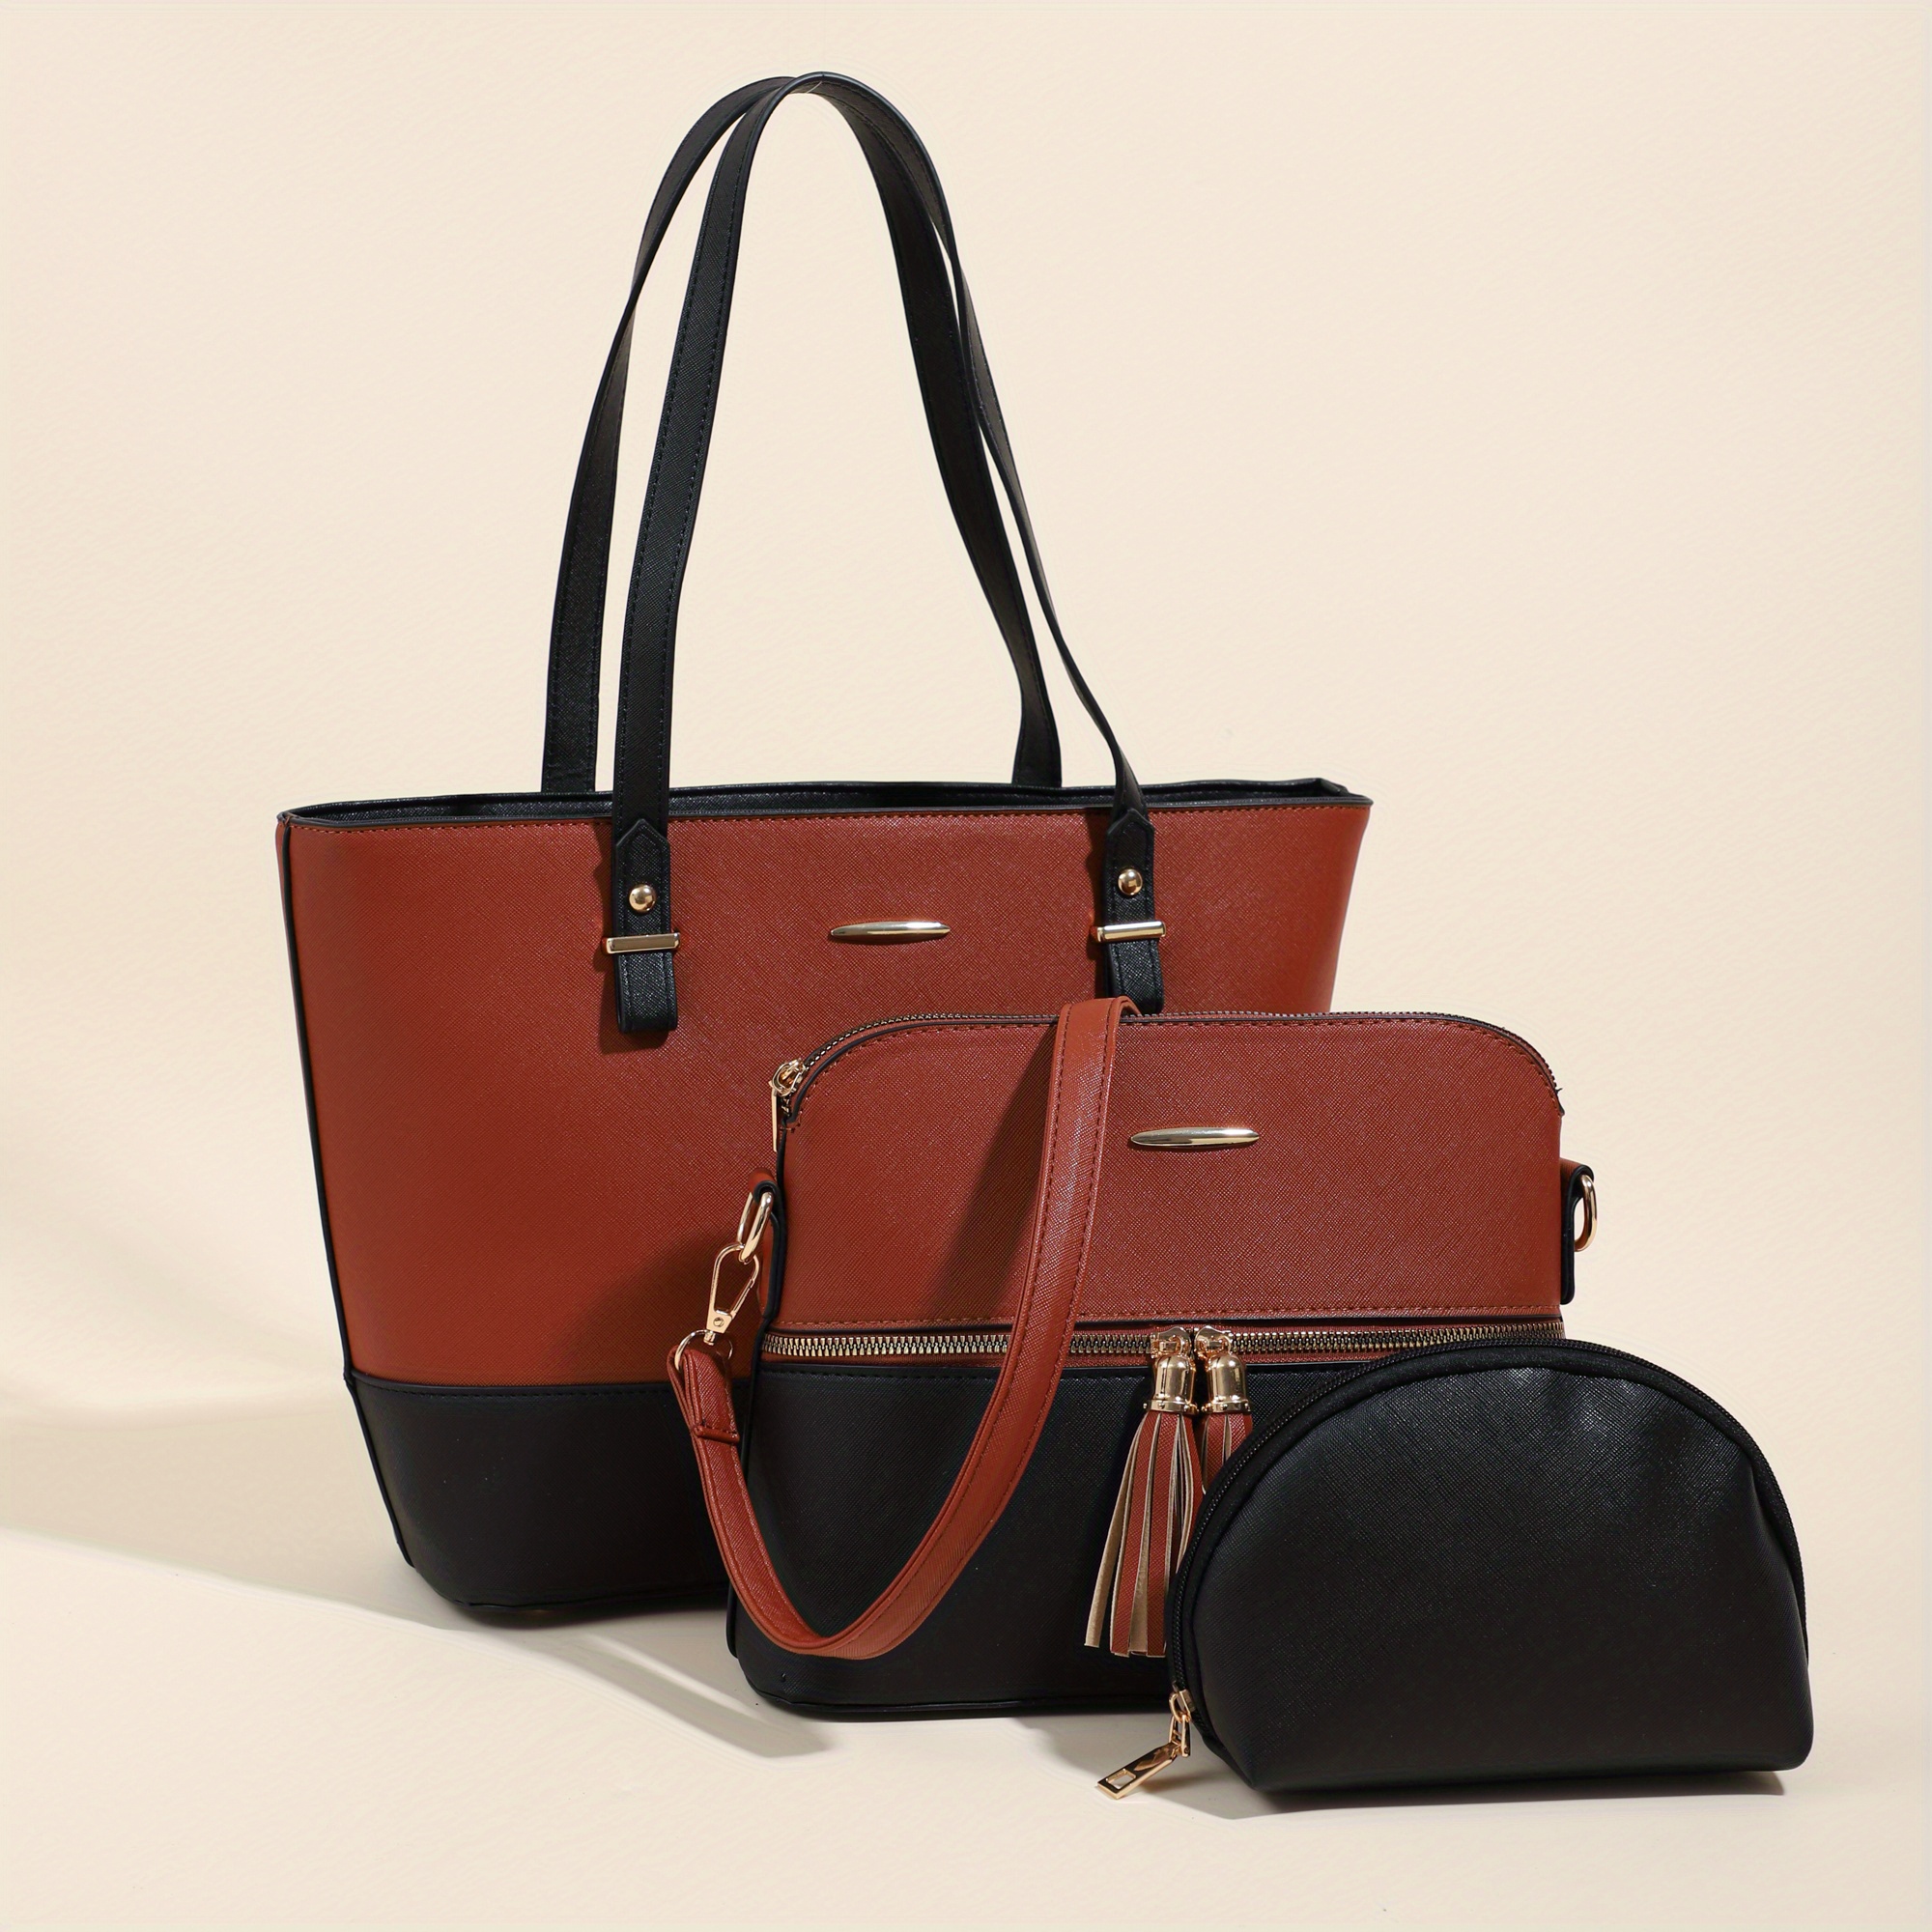 Large Tote Handbag 3pcs Set Shoulder Bag Crossbody Clutch Purses for Women